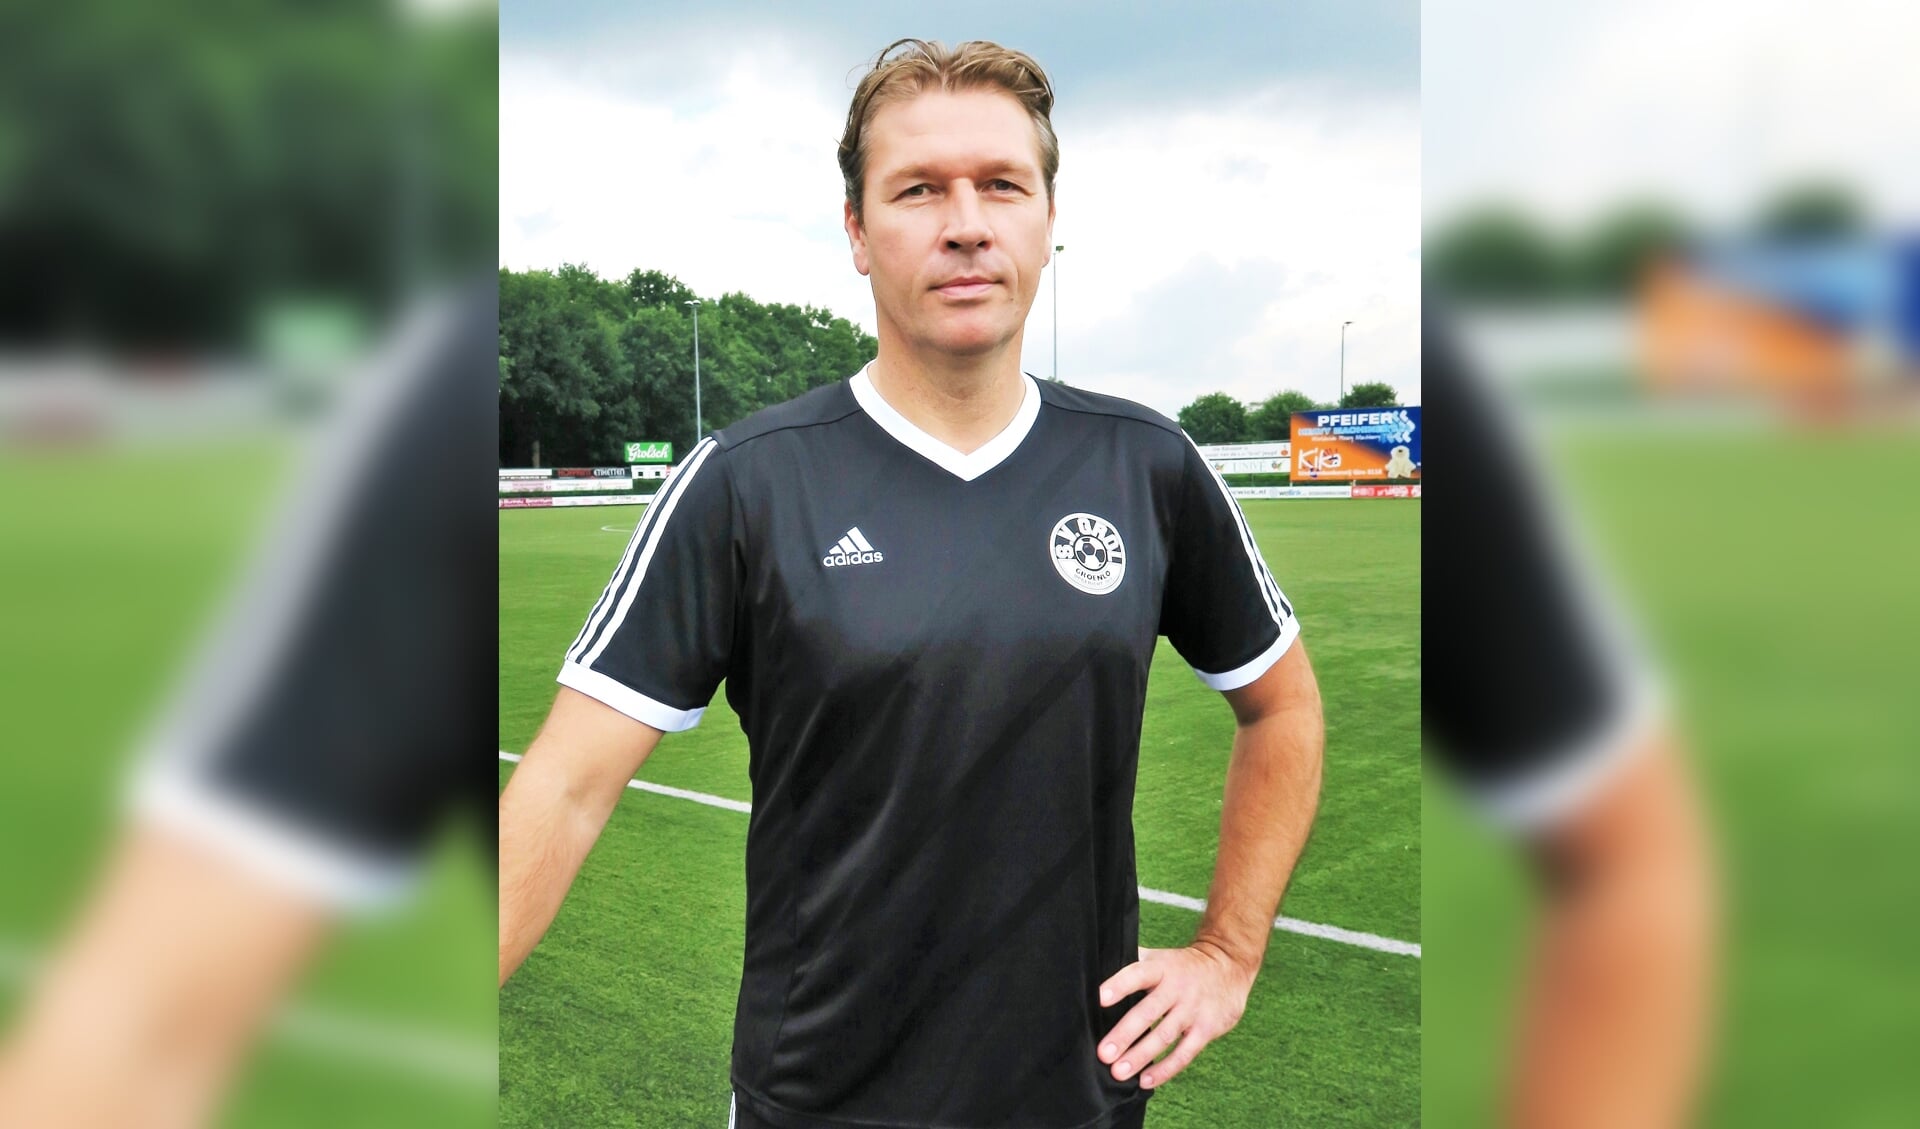 Sander Hoopman, momenteel voor het derde en laatste seizoen hoofdtrainer van S.V. Grol. Foto: Theo Huijskes